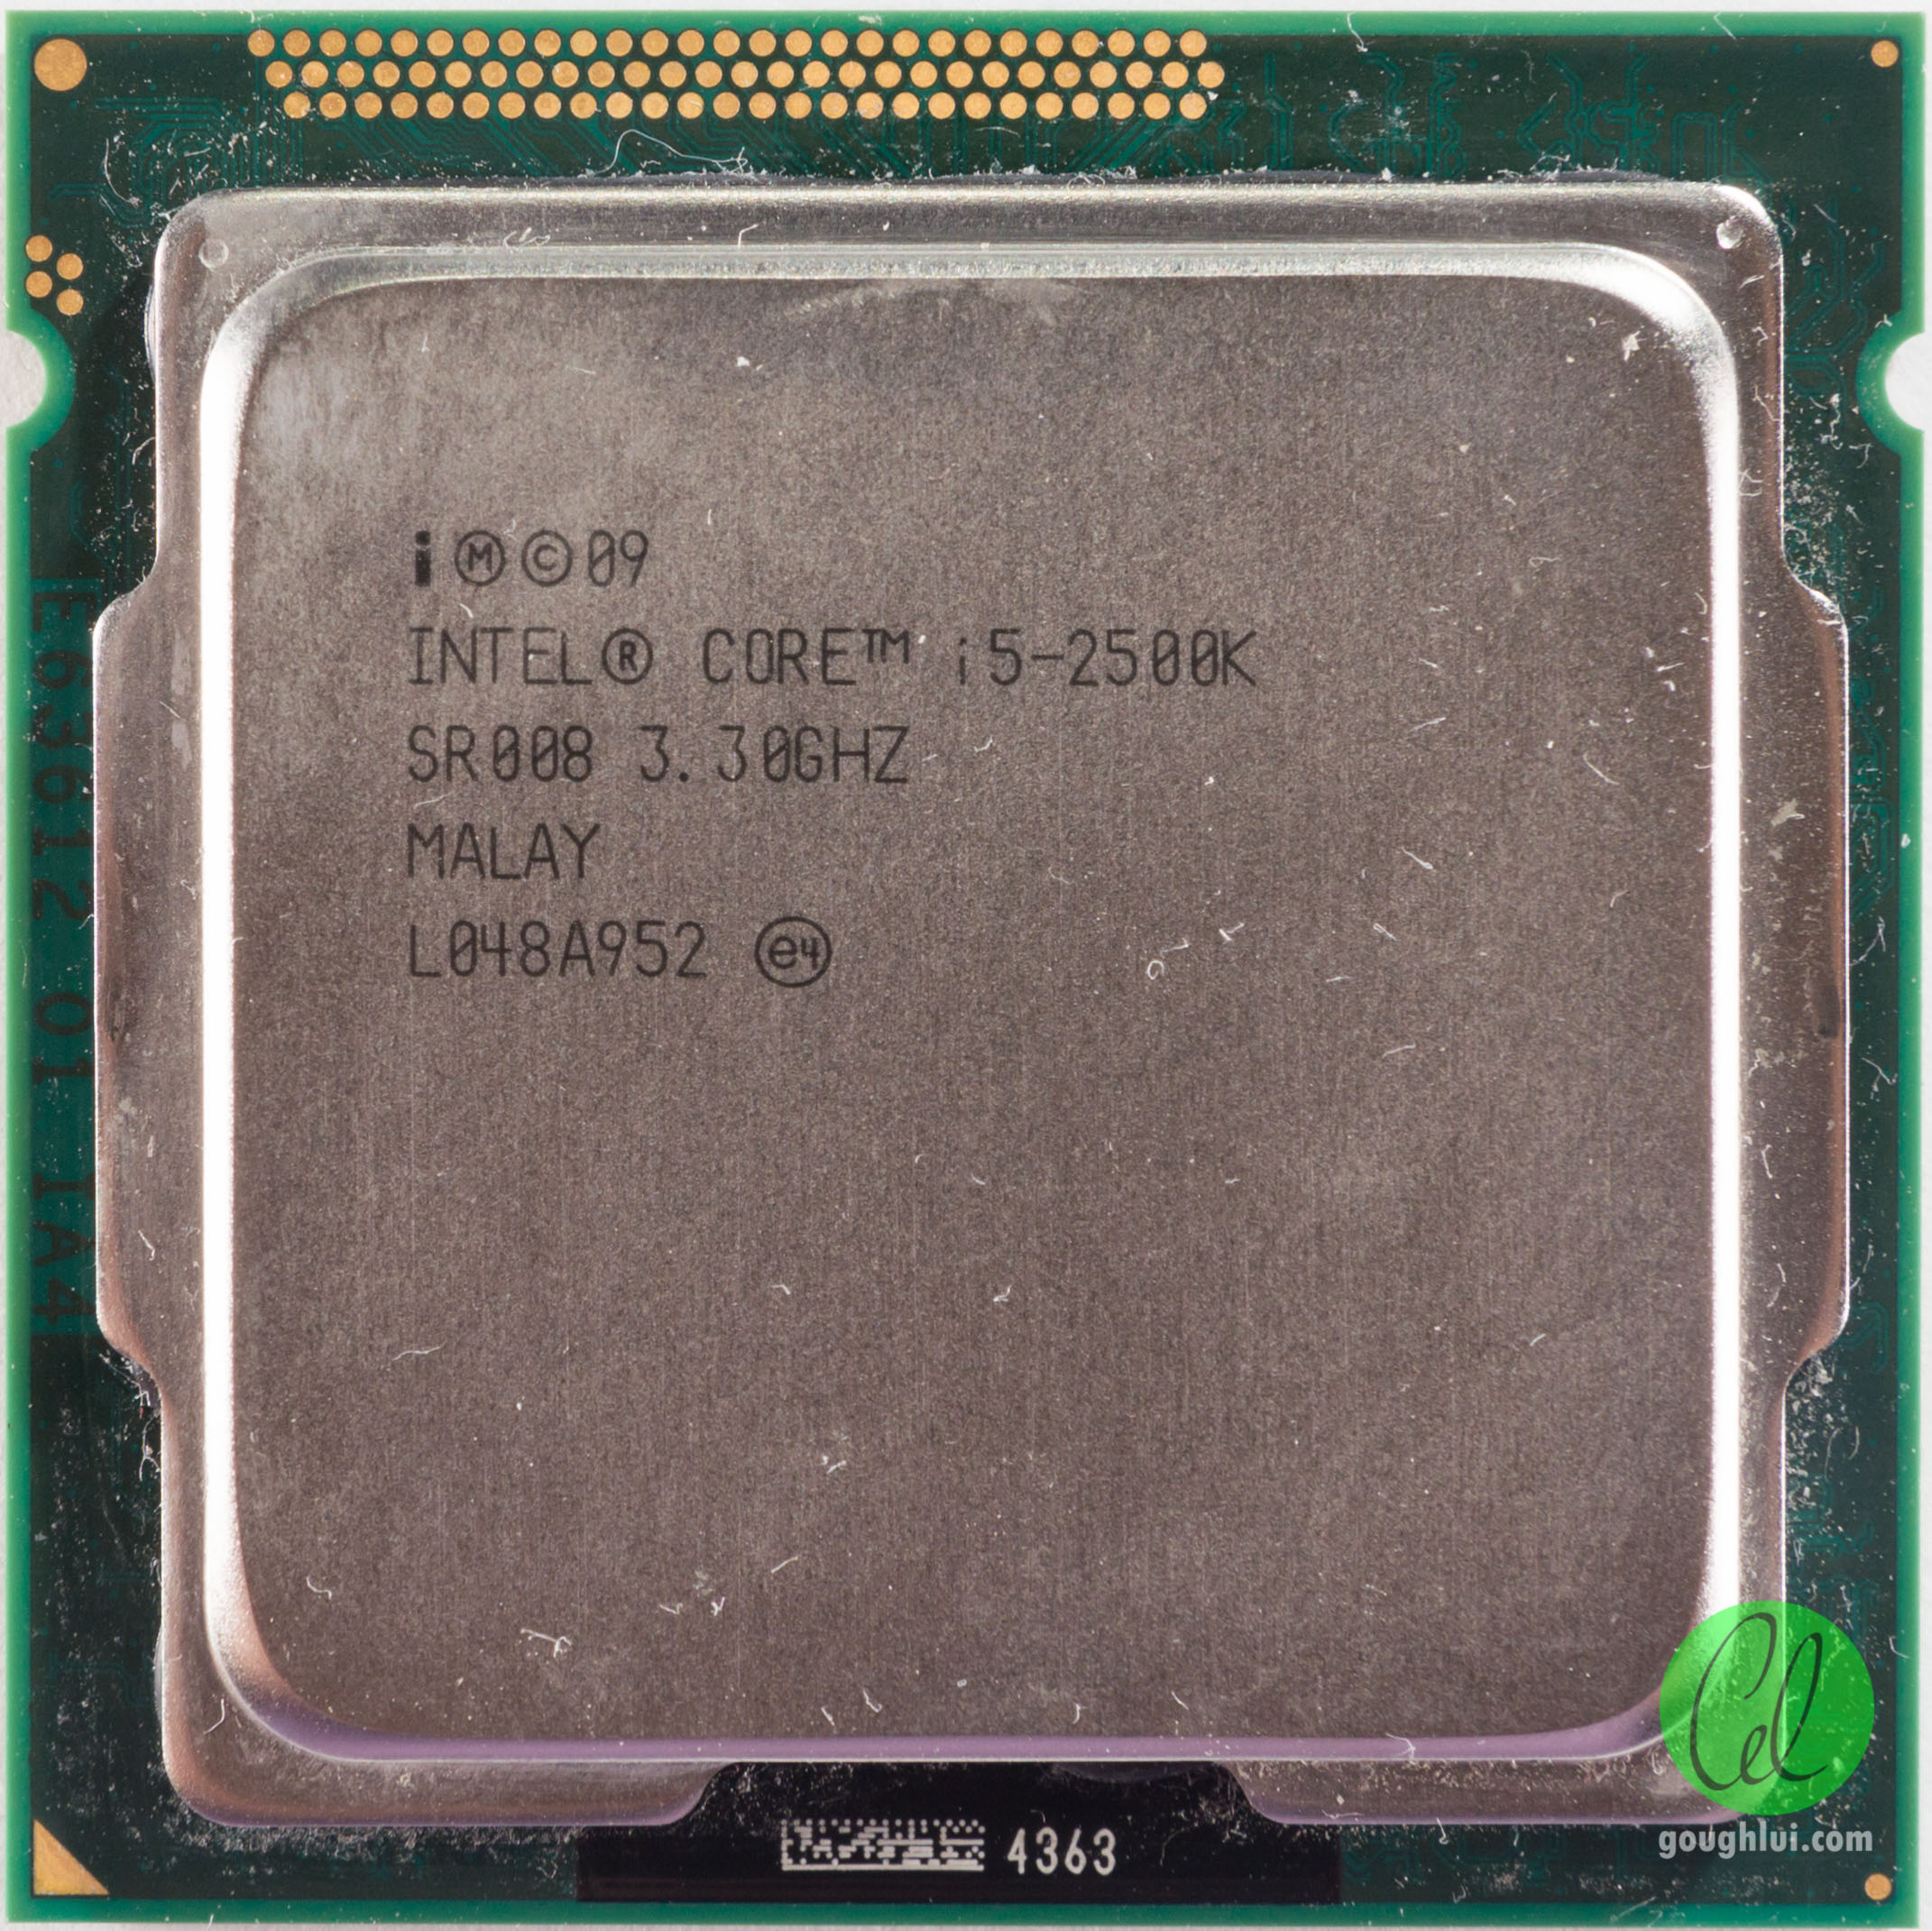 Интел 1155. I7 2600s сокет. Интел сокет 1155. Intel Pentium g840 lga1155, 2 x 2800 МГЦ. Чипсет 1155.